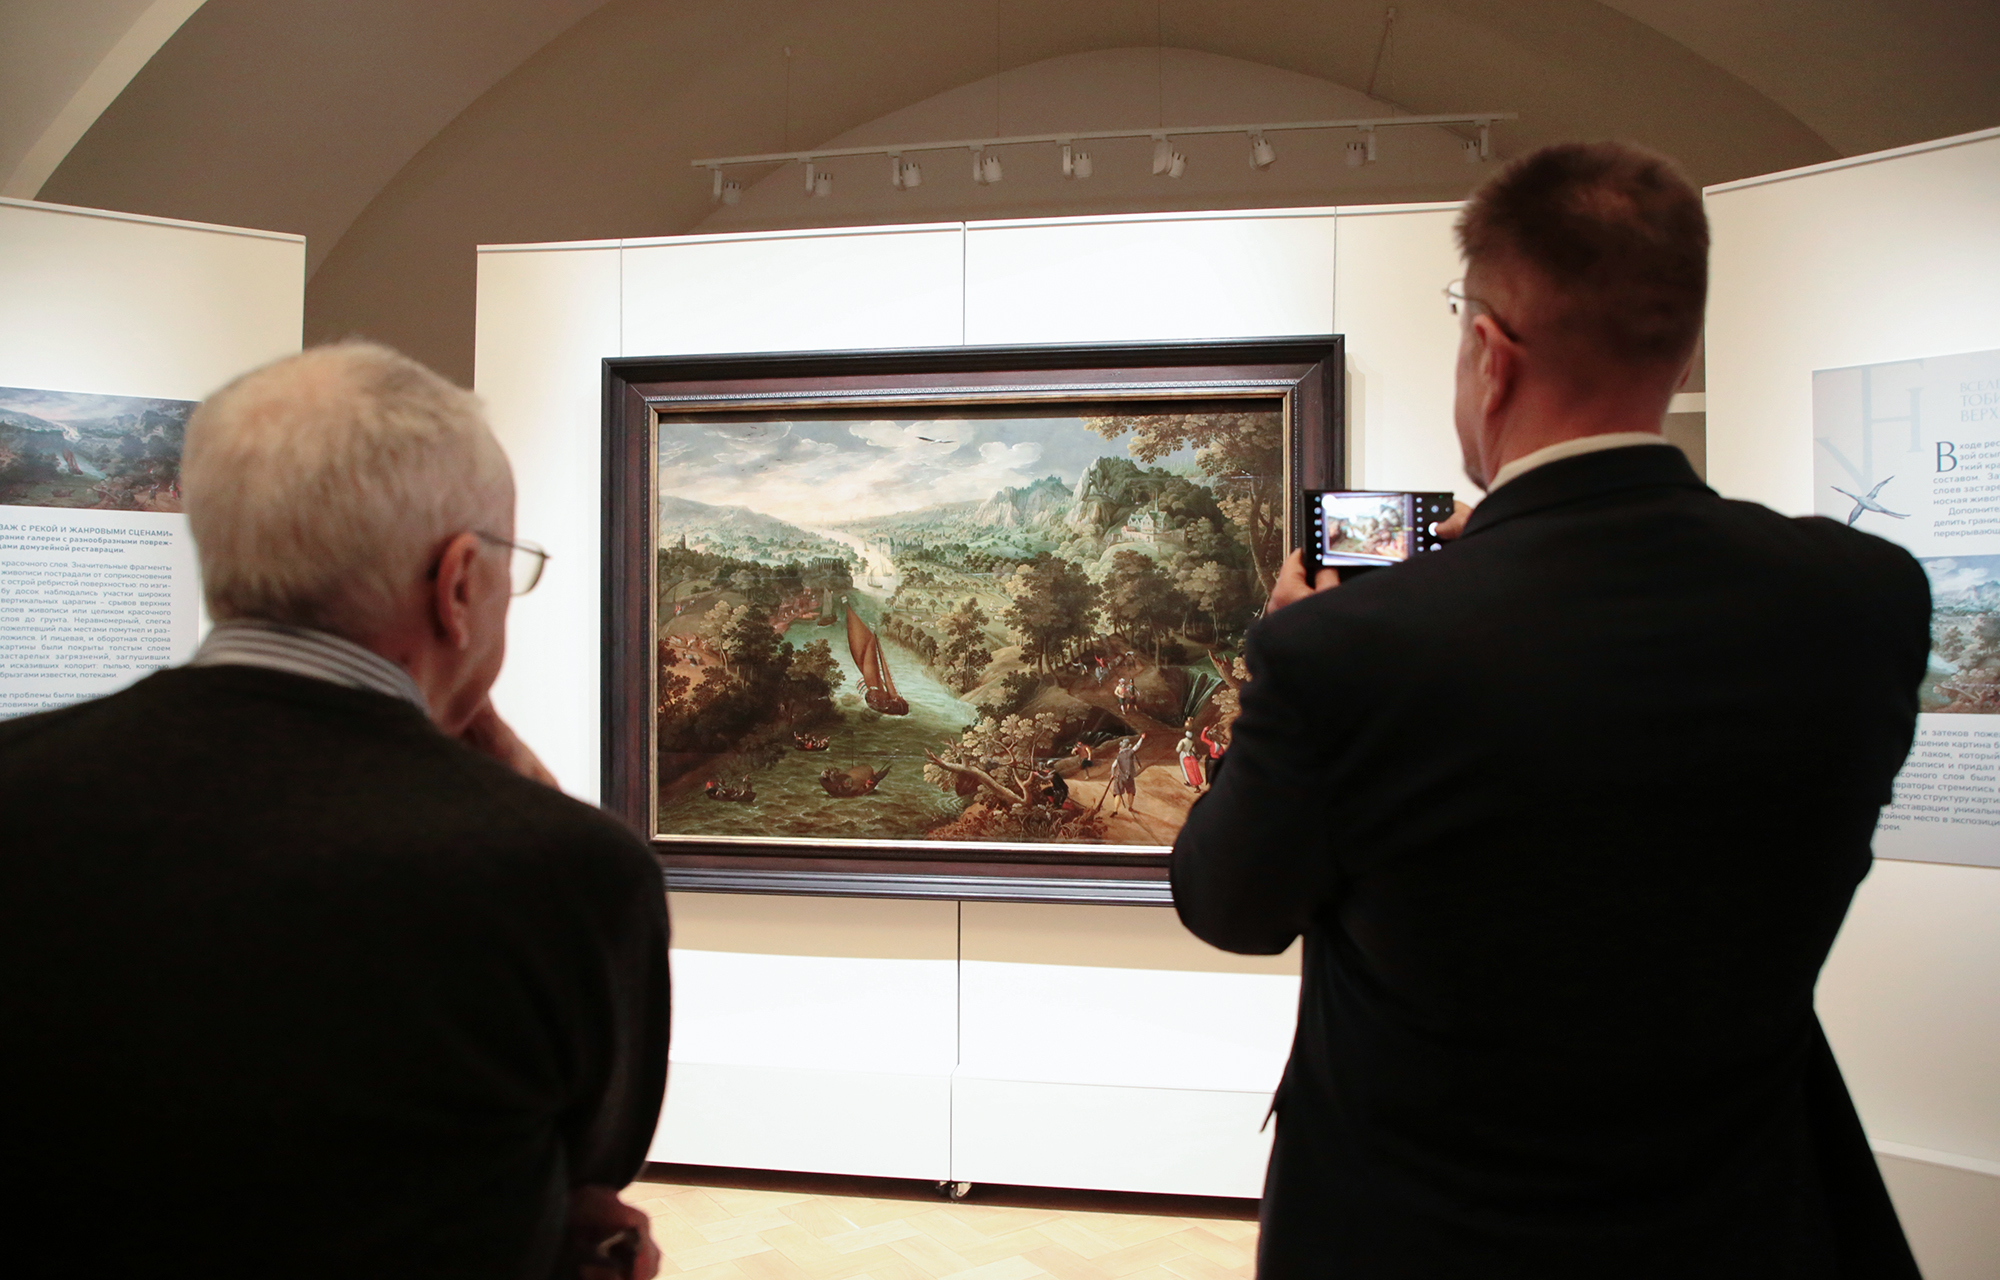 В Тверском императорском дворце открылась выставка фламандского живописца и графика «Вселенная Тобиаса Верхахта»